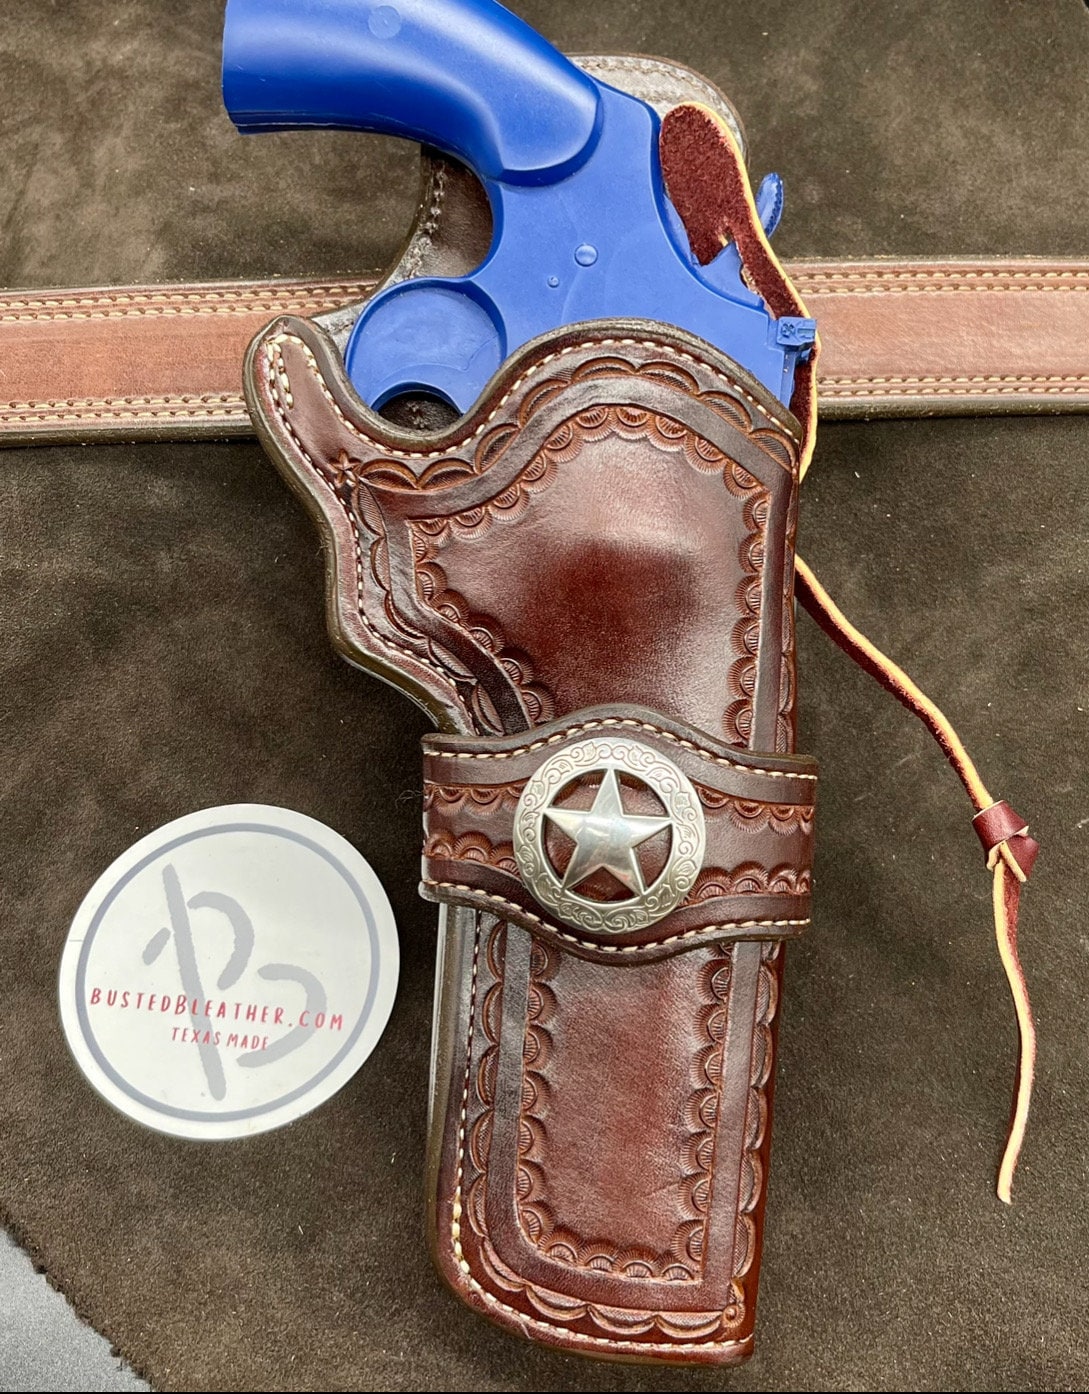 rafacampillos - Cinturón para calibre 44 y funda de revólver para colt.  Finished gunholster and cartridge belt cal. 44. #leather #western  #westerntack #gunholster#artesaniaencuero #pistoleras #canana  #cowboyshooting #cowboy #cinturones #cuero #armas